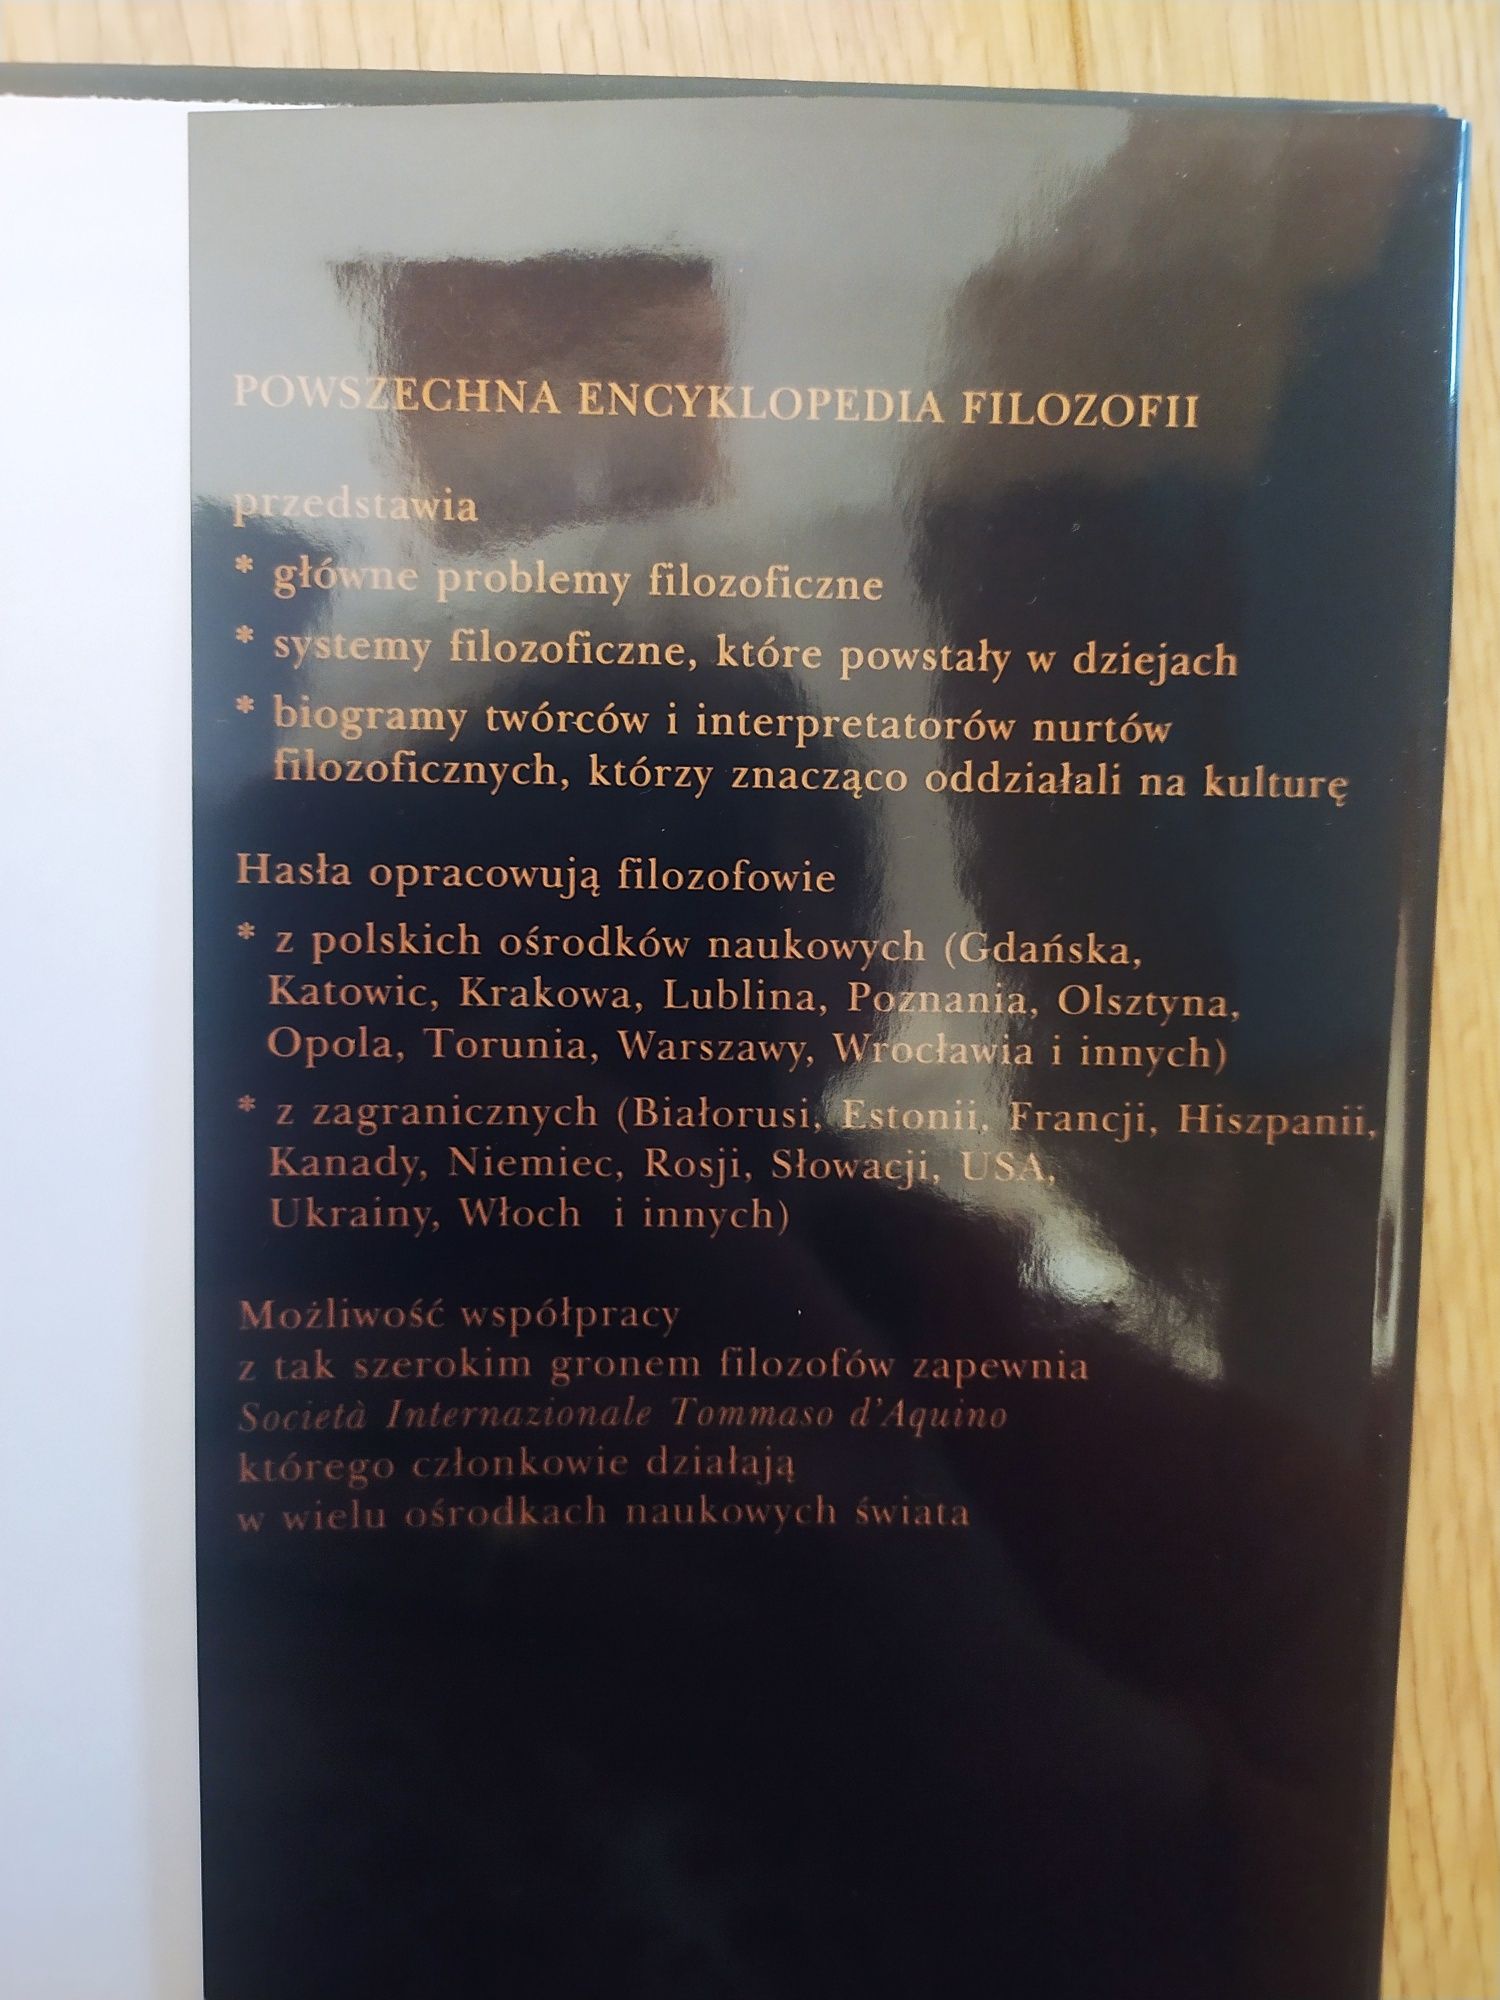 Powszechna encyklopedia filozofii Polskie Towarzystwo Św. Tomasza 4 i7